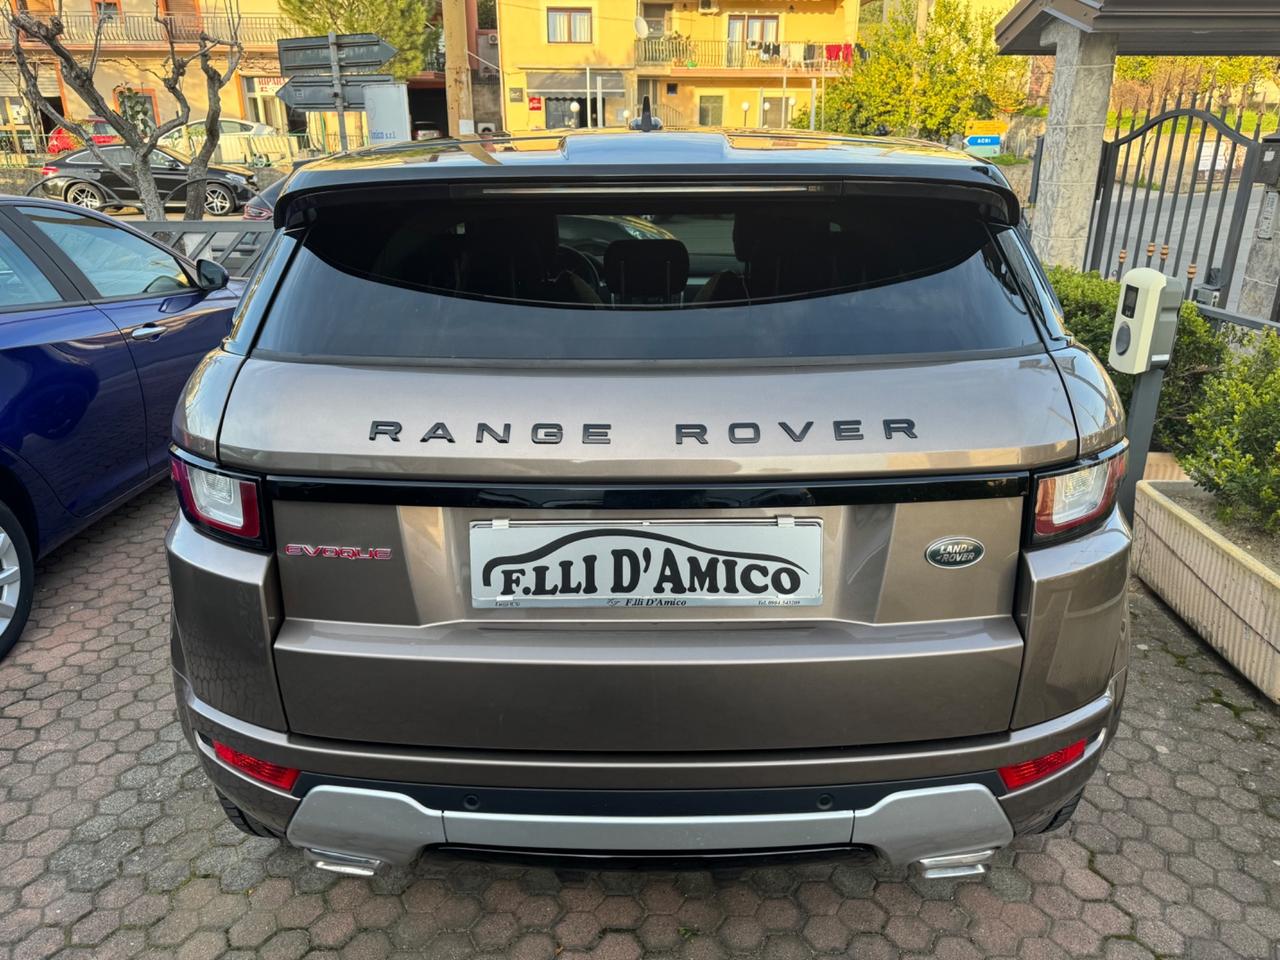 Land Rover Range Rover Evoque Range Rover Evoque 2.0 TD4 180 CV 5p. Business Edition SE